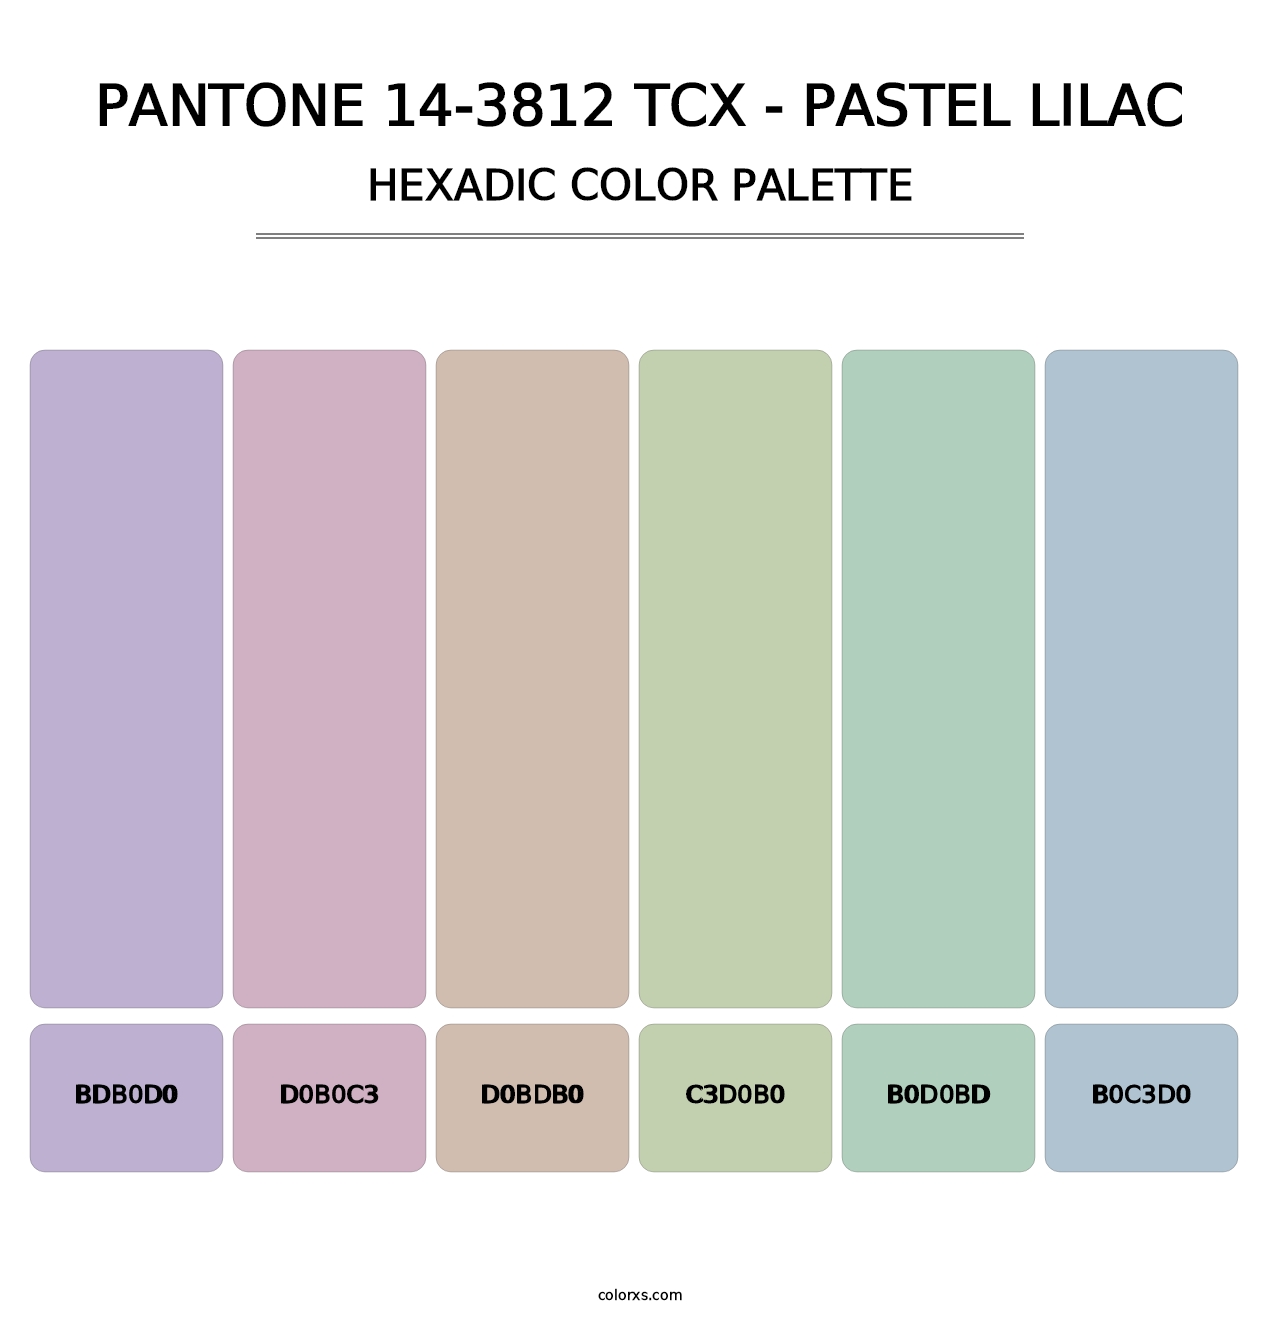 PANTONE 14-3812 TCX - Pastel Lilac - Hexadic Color Palette